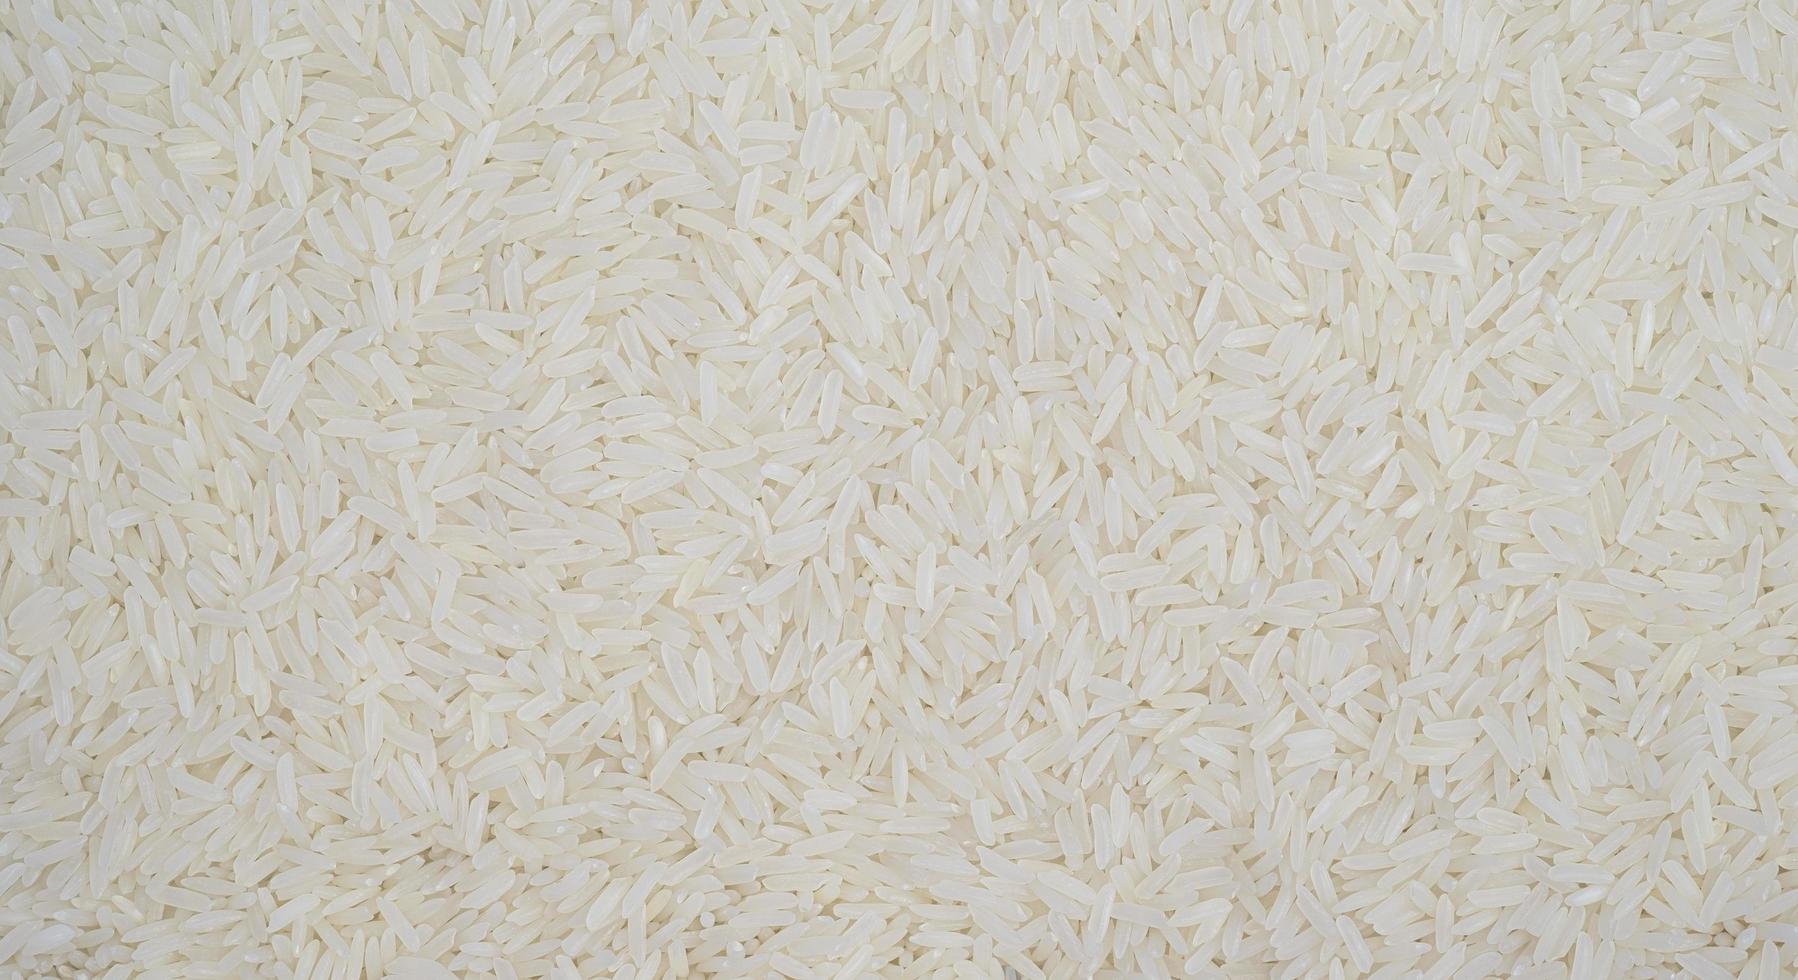 biologico bianca crudo gelsomino- basmati riso sfondo, bianca lungo semi. macro avvicinamento. come immagine fondale o sfondo modello struttura foto